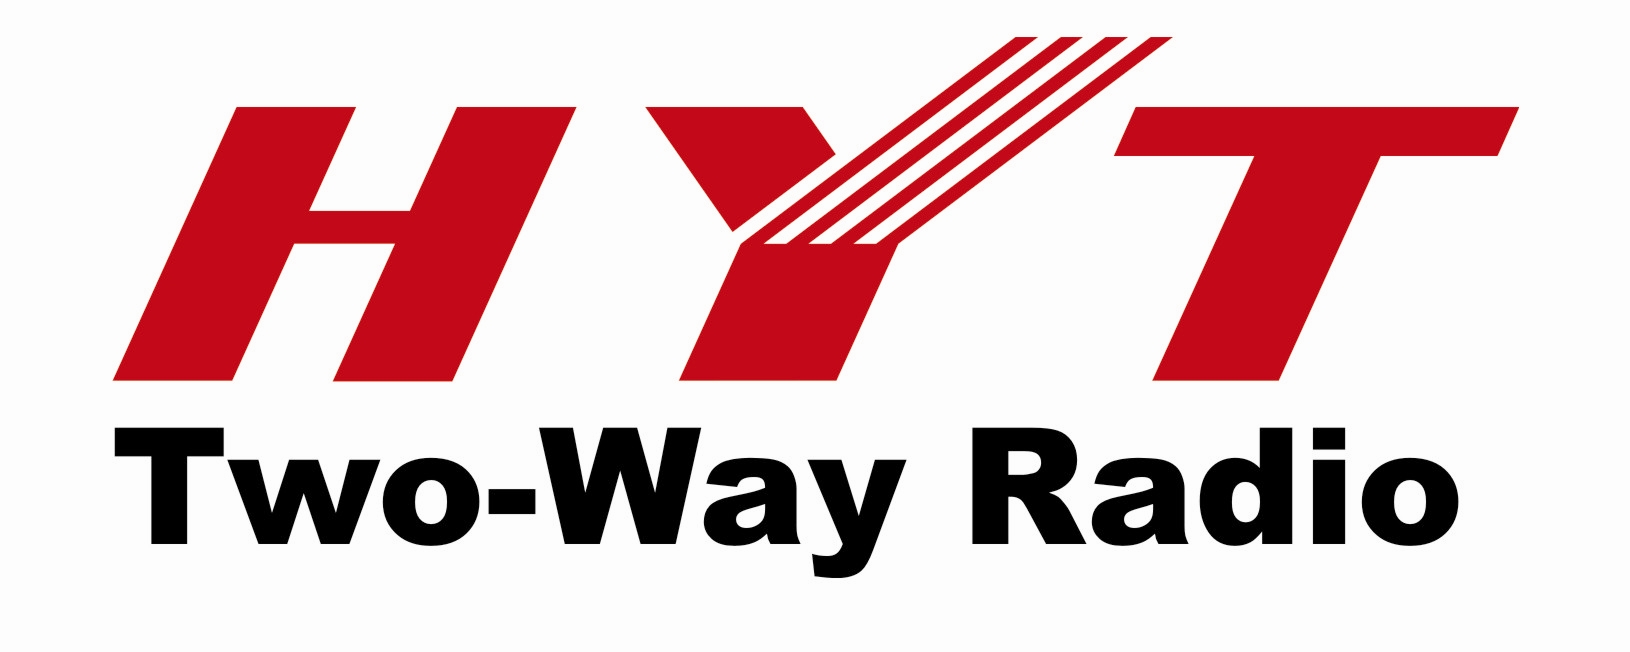 HYT Logo